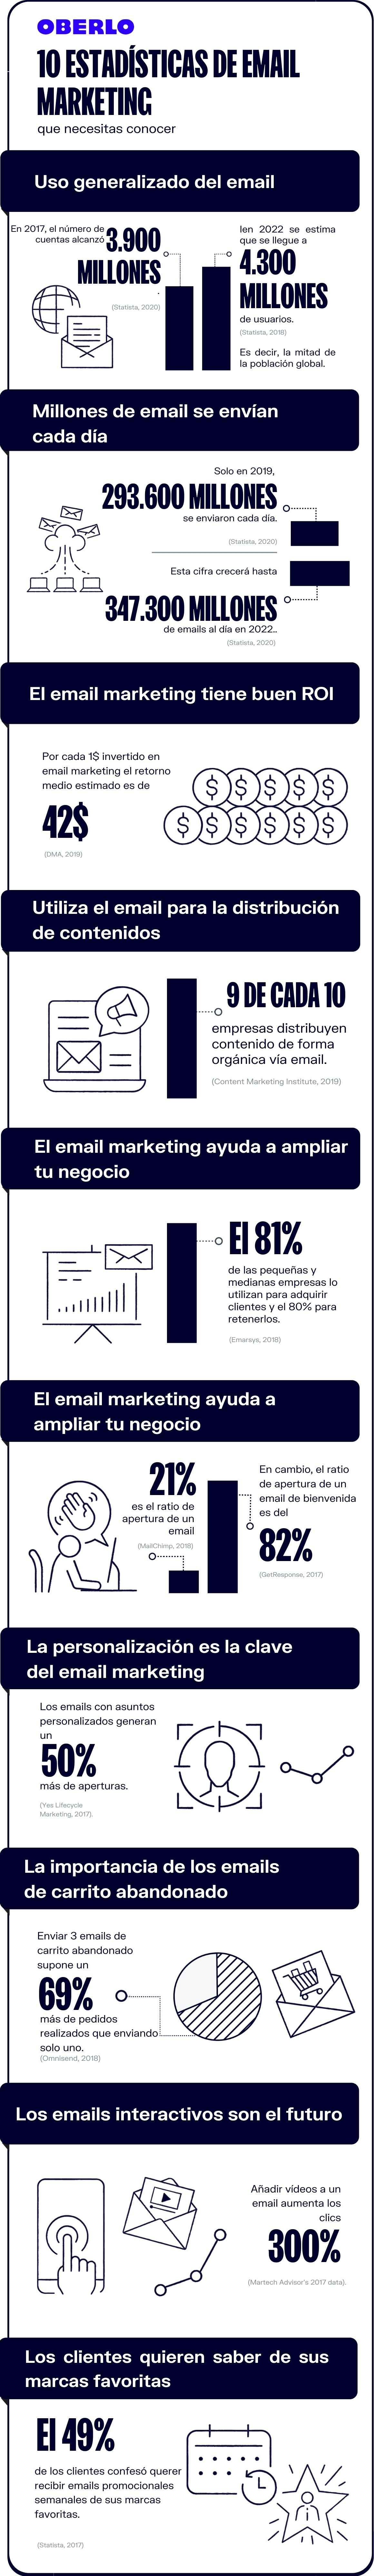 Marketing por correo electrónico en cifras